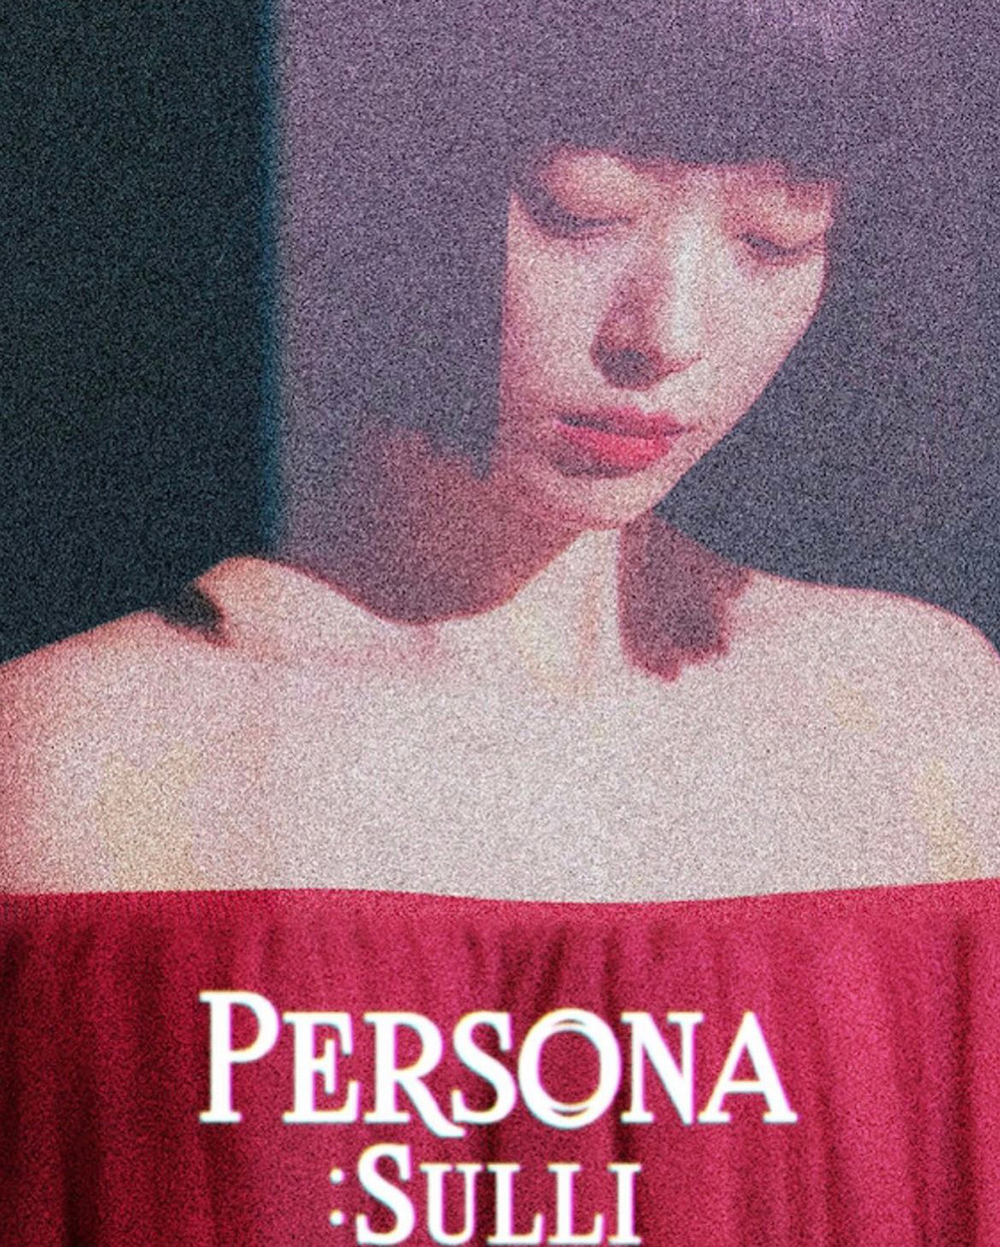 Banner Phim Persona: Sulli (Persona: Sulli)